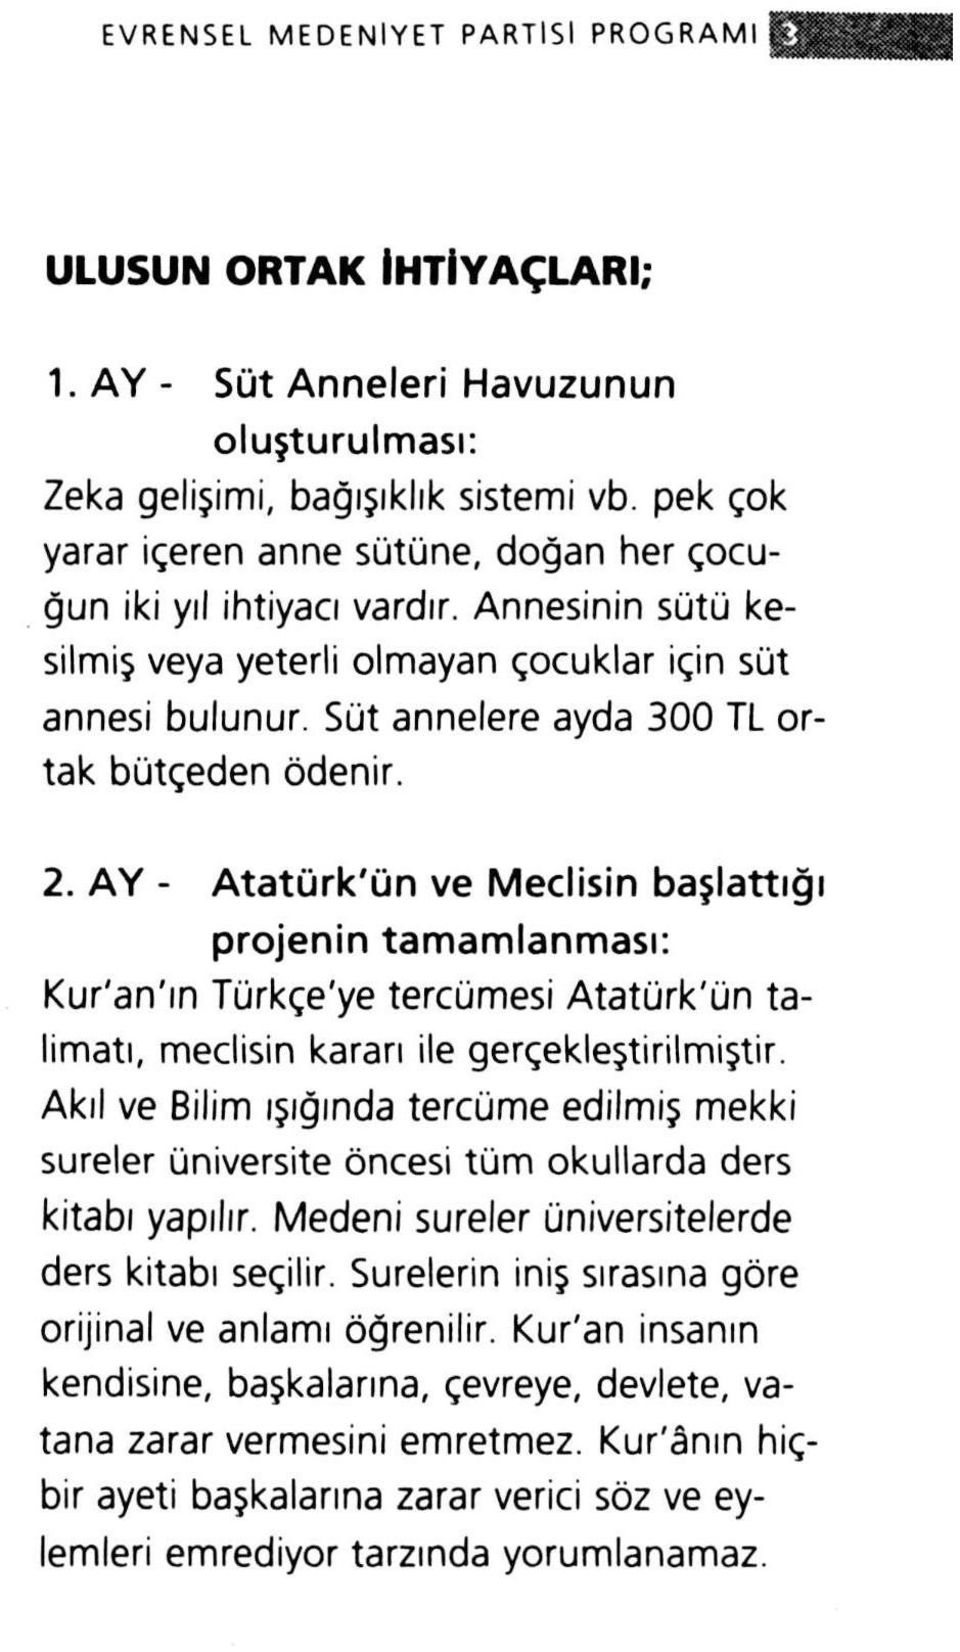 AY - Atatürk'ün ve Meclisin başlattığı projenin tamamlanması: Kur'an'ın Türkçe'ye tercümesi Atatürk'ün talimatı, meclisin kararı ile gerçekleştirilmiştir.